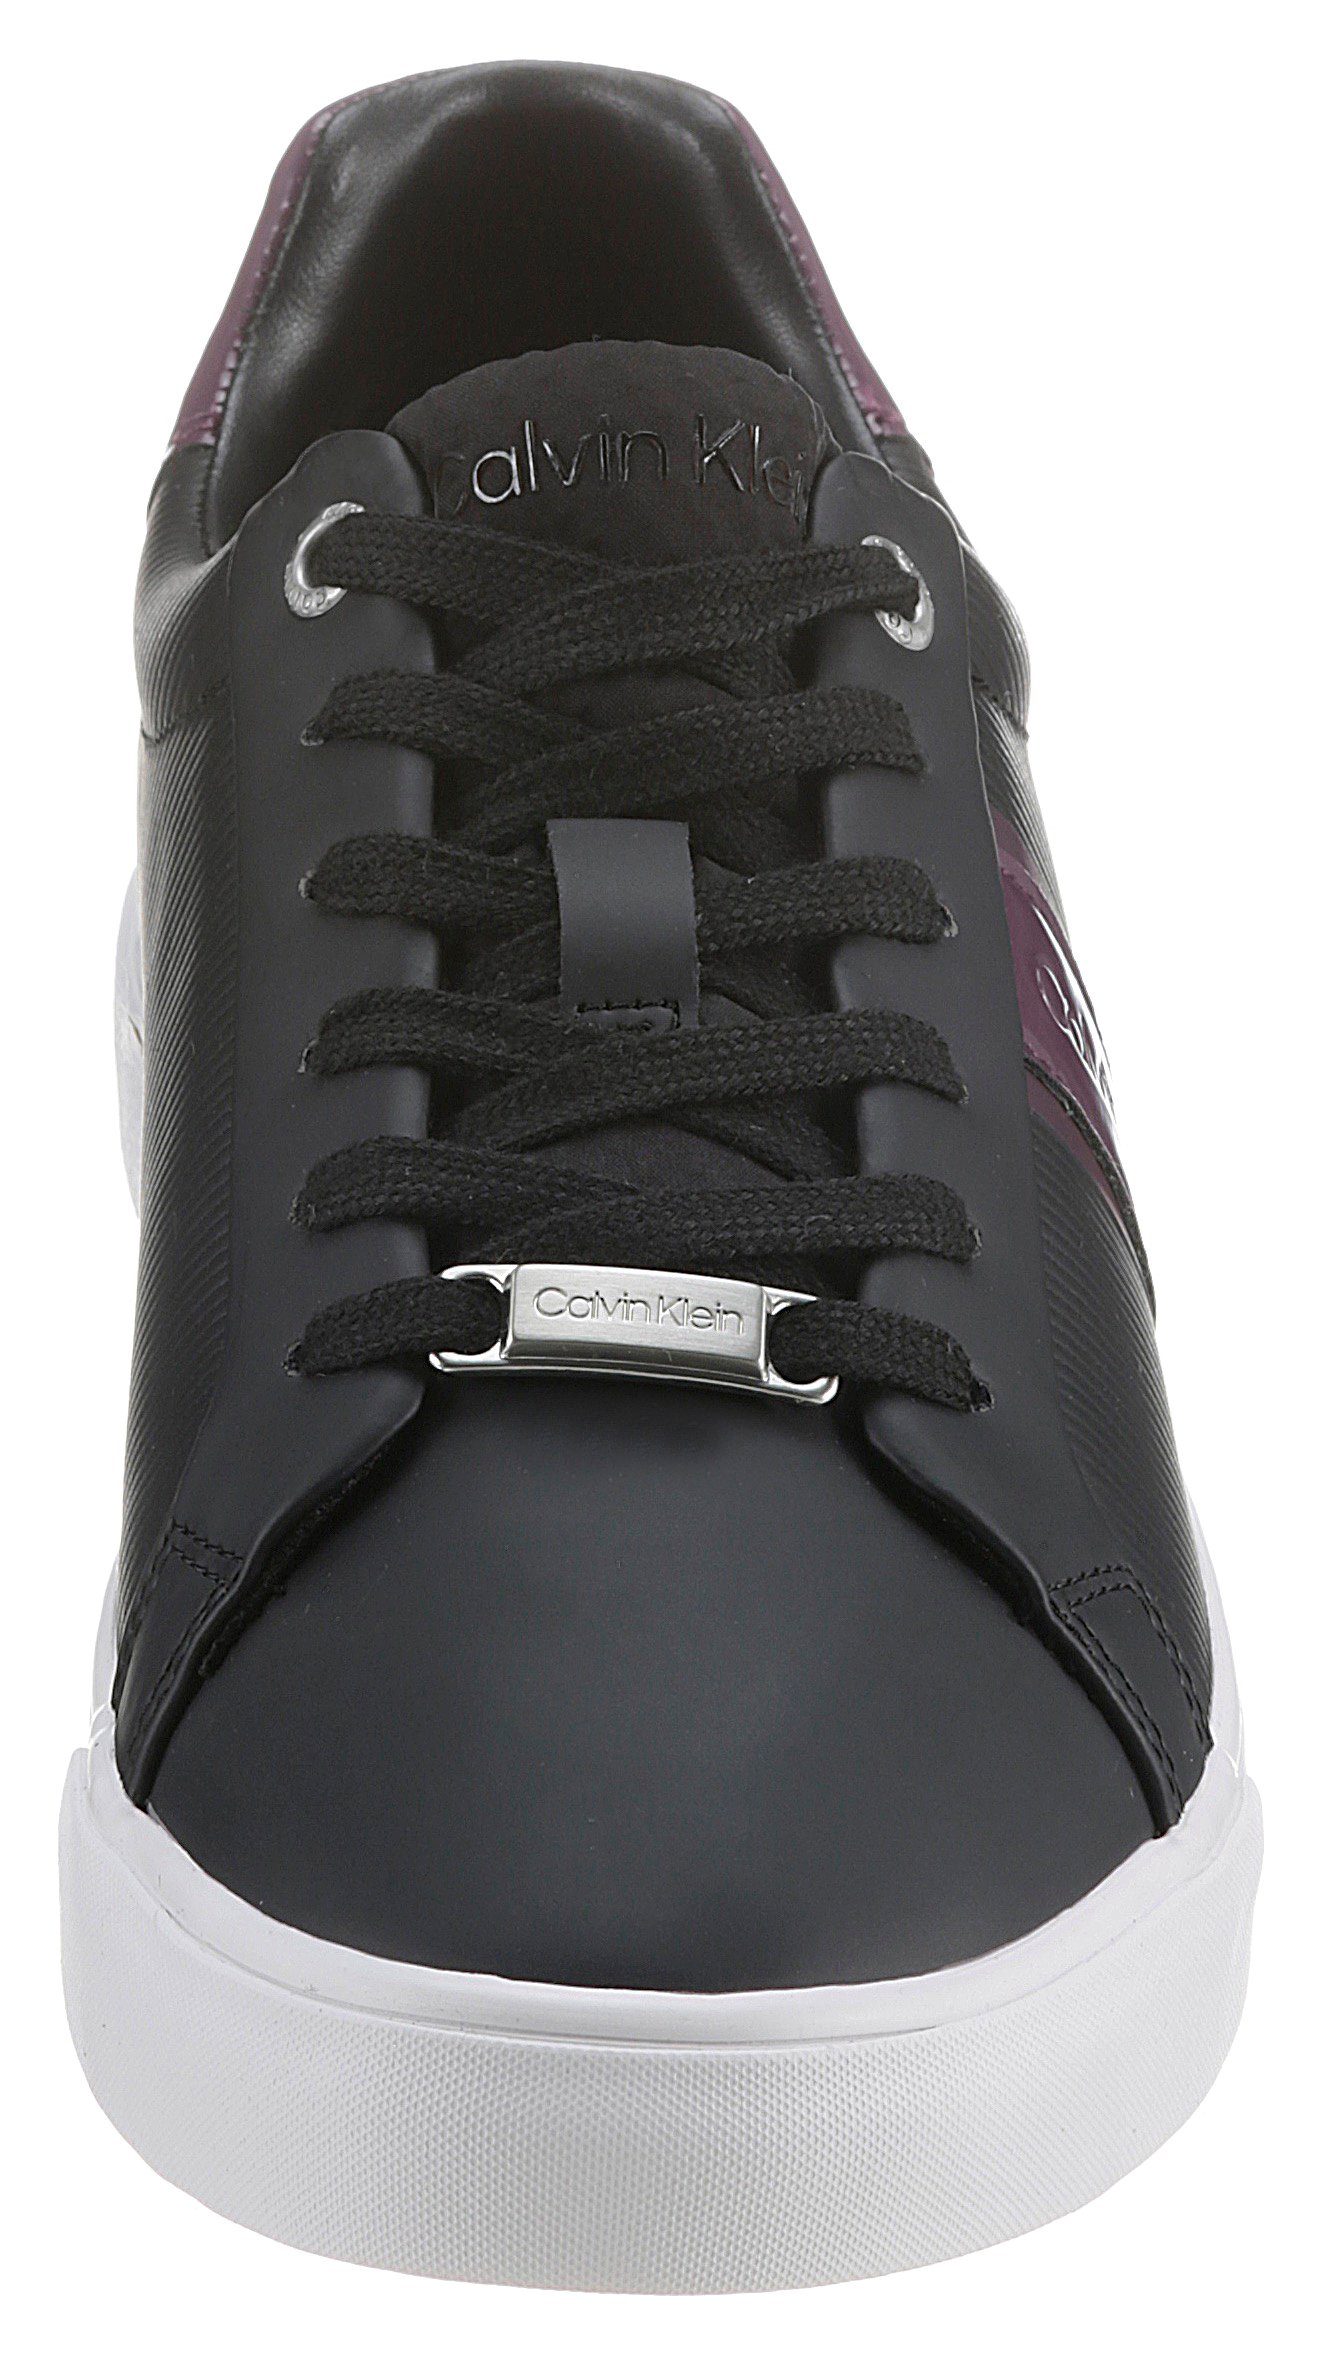 PROFILE Calvin Sneaker monochromem LOW UP VULC in lila schwarz LACE Look Klein